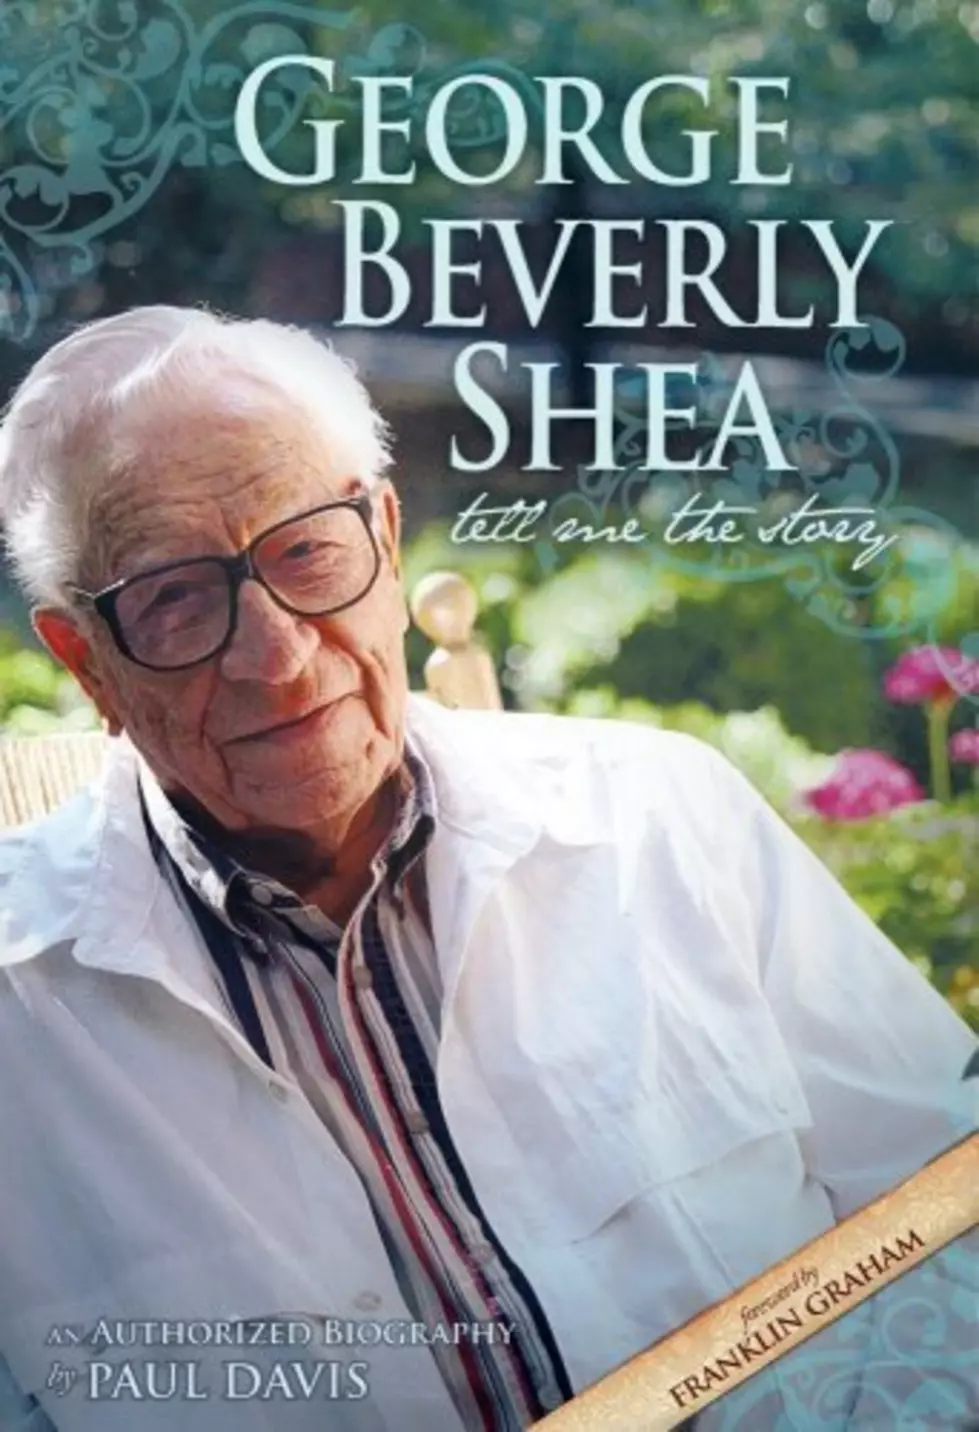 George Beverly Shea, “America’s Most Beloved Gospel Singer,” Dies at 104!